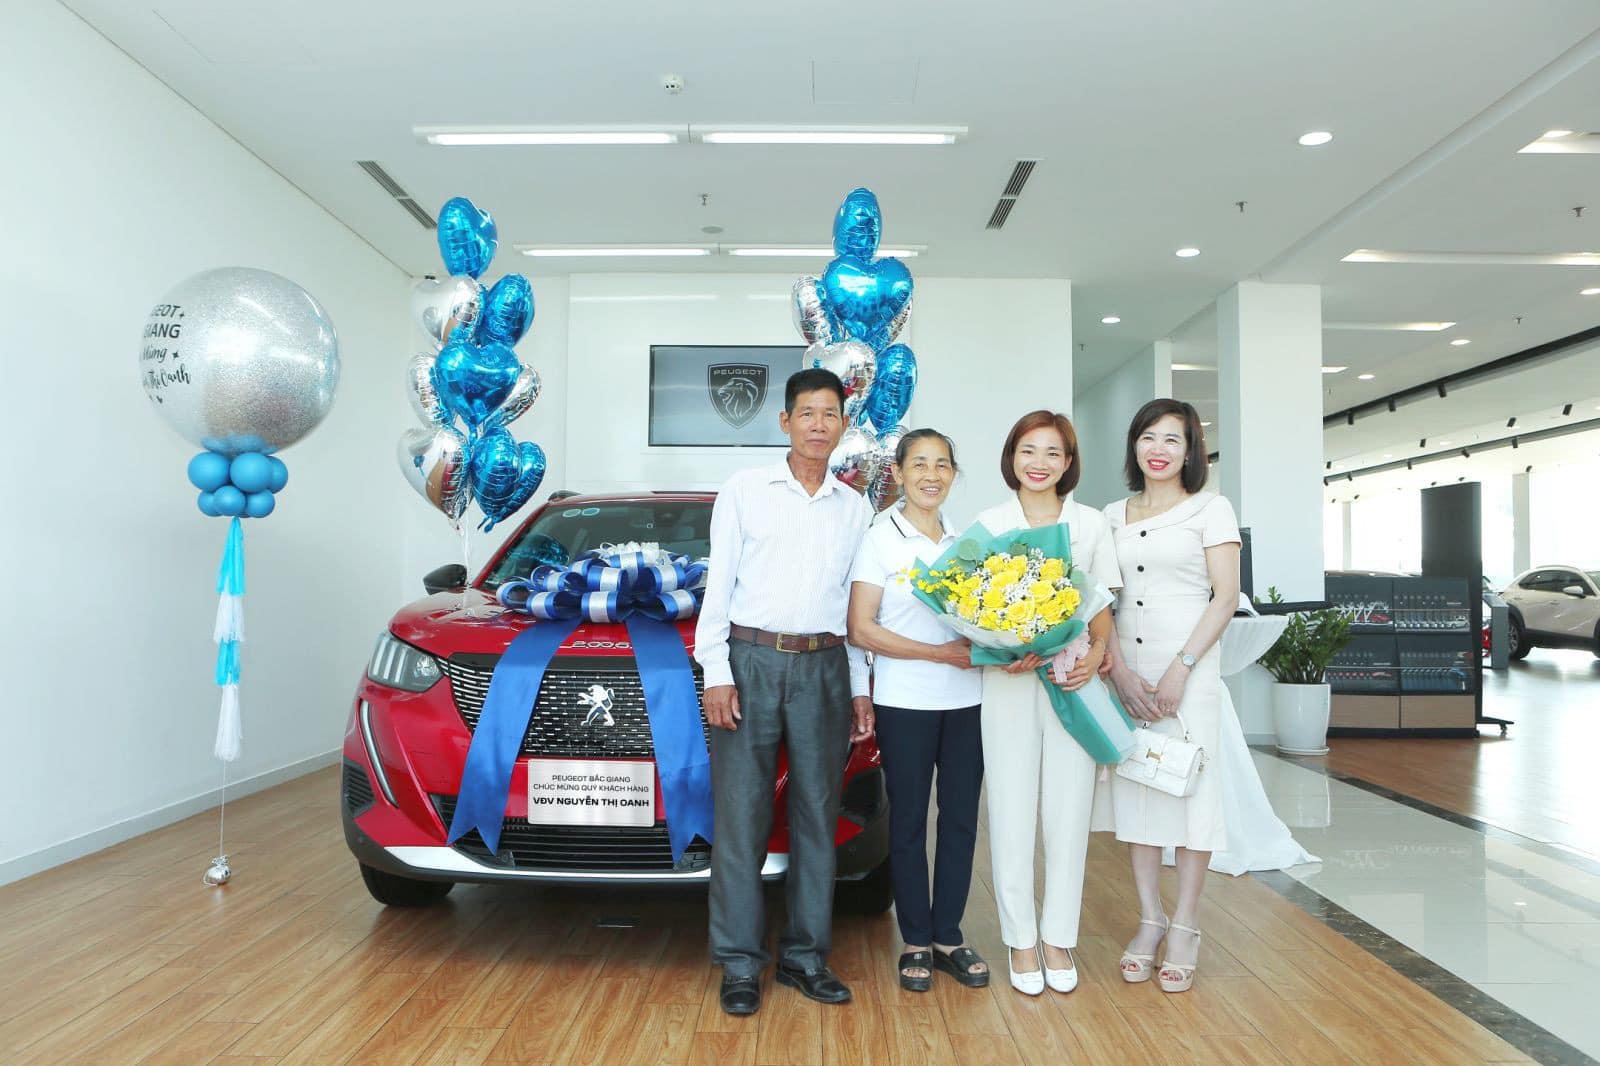 Nguyễn Thị Oanh hân hoan nhận xe Peugeot, chờ đợi trải nghiệm thú vị  - Ảnh 1.